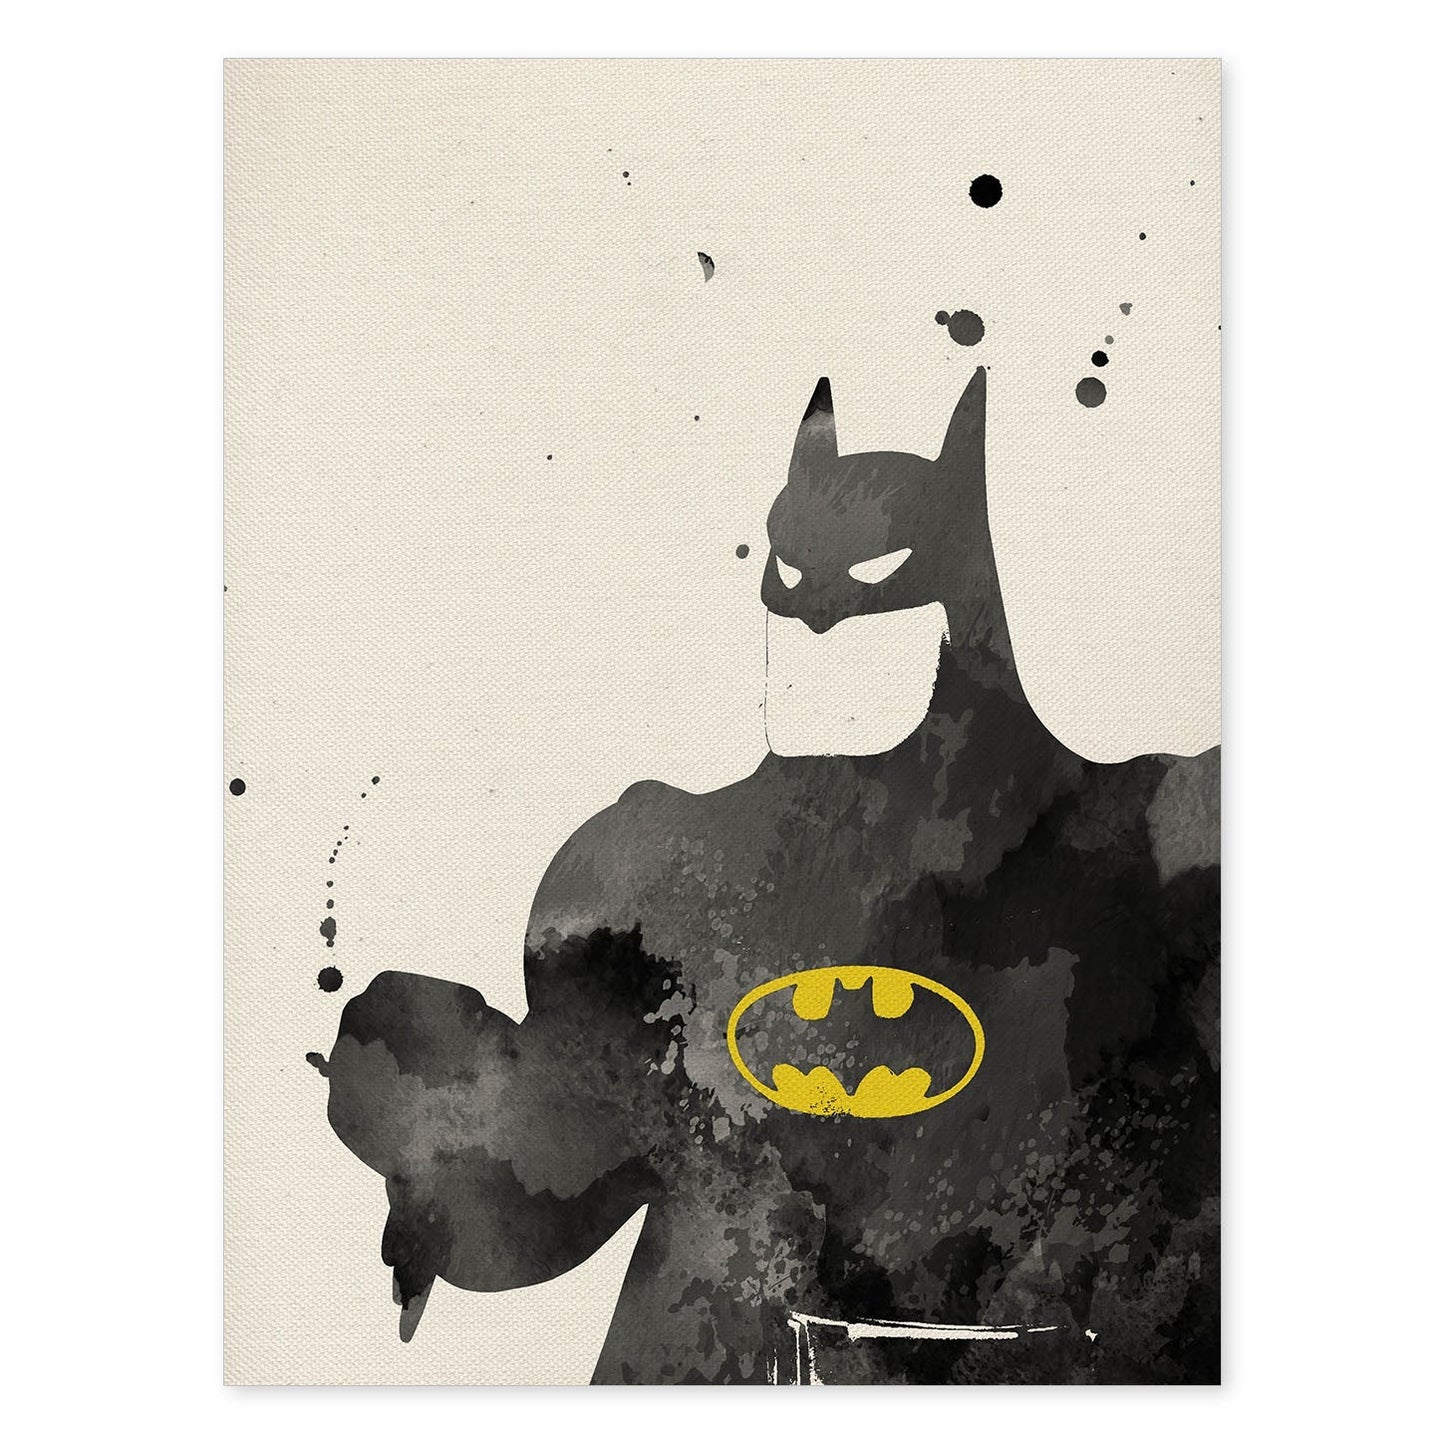 Poster de Batman 2. Láminas de cine, películas, y actores. Posters de películas antiguas con estilo acuarela.-Artwork-Nacnic-A4-Sin marco-Nacnic Estudio SL